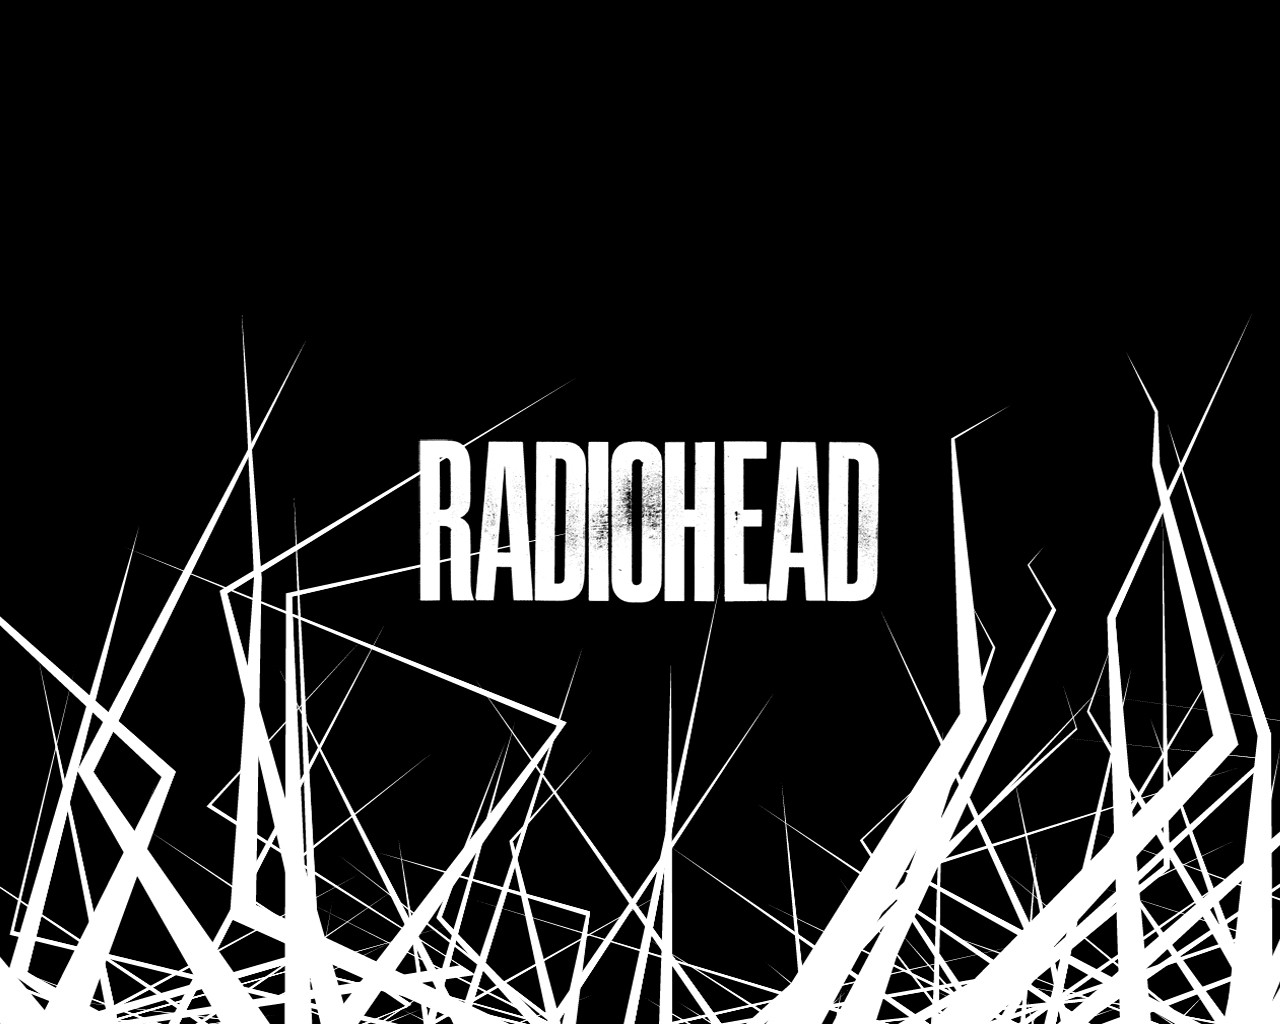 Radiohead-radiohead-27519290-1280-1024.jpg